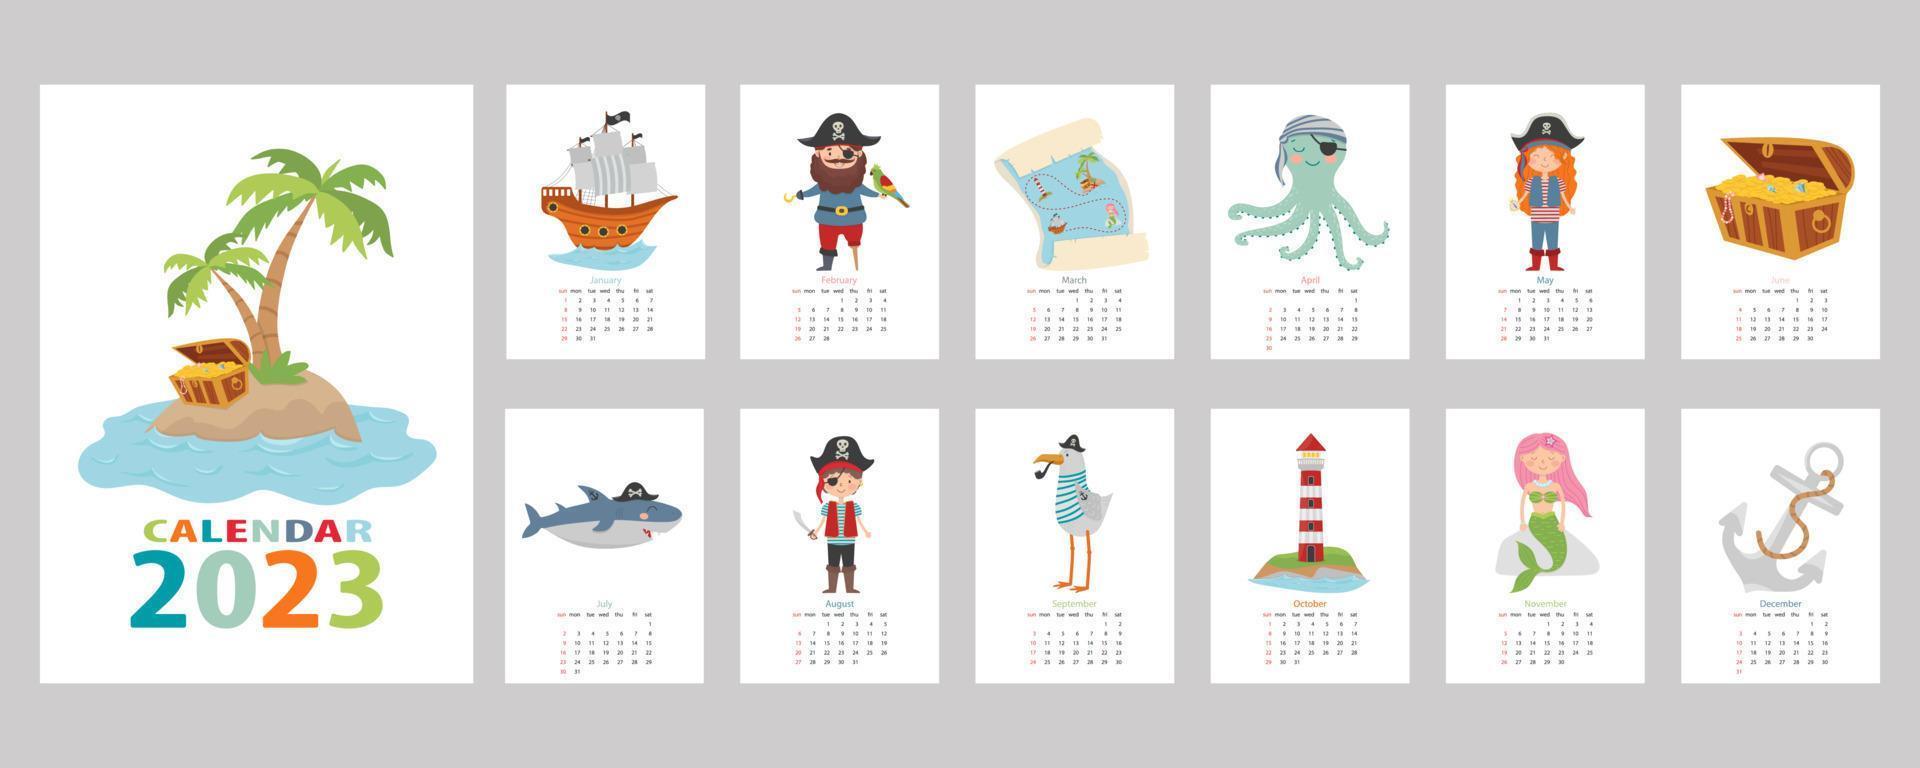 calendrier 2023. calendrier coloré pour enfants avec un design pirate. pirate, île au trésor, requin, poulpe, mouette, sirène, bateau et phare. vecteur